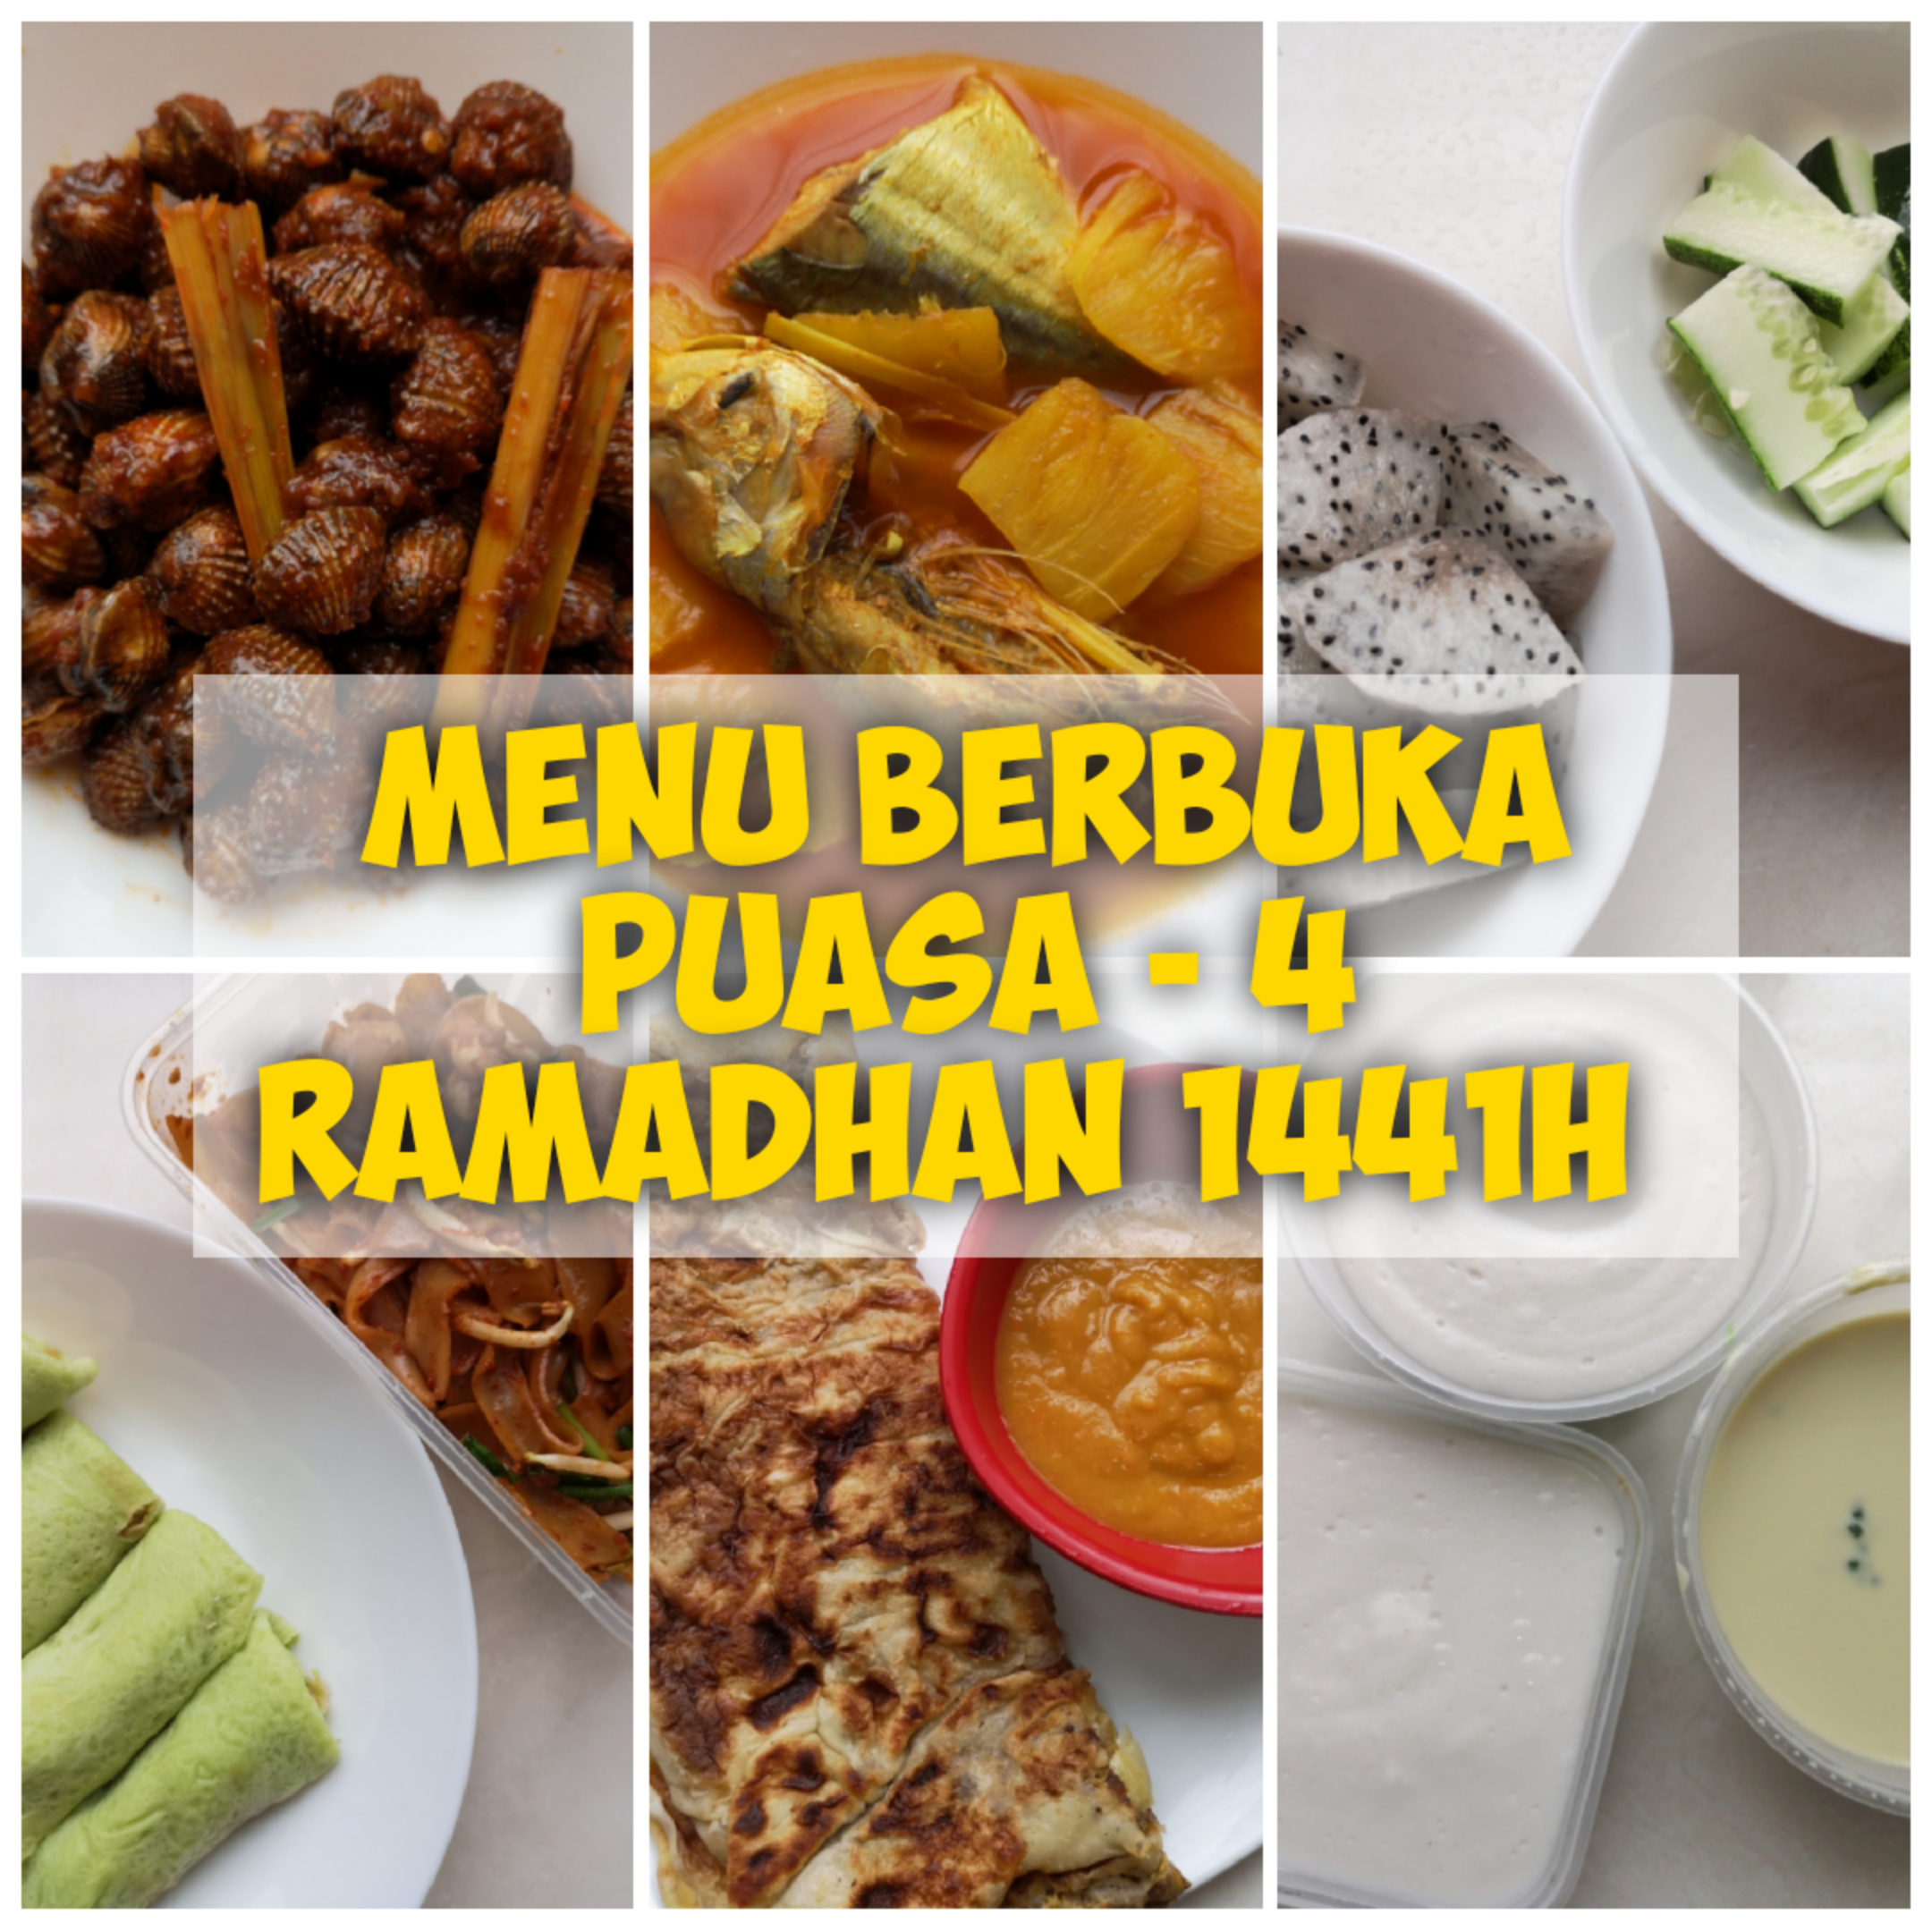 Menu Berbuka Puasa – 4 Ramadhan 1441H